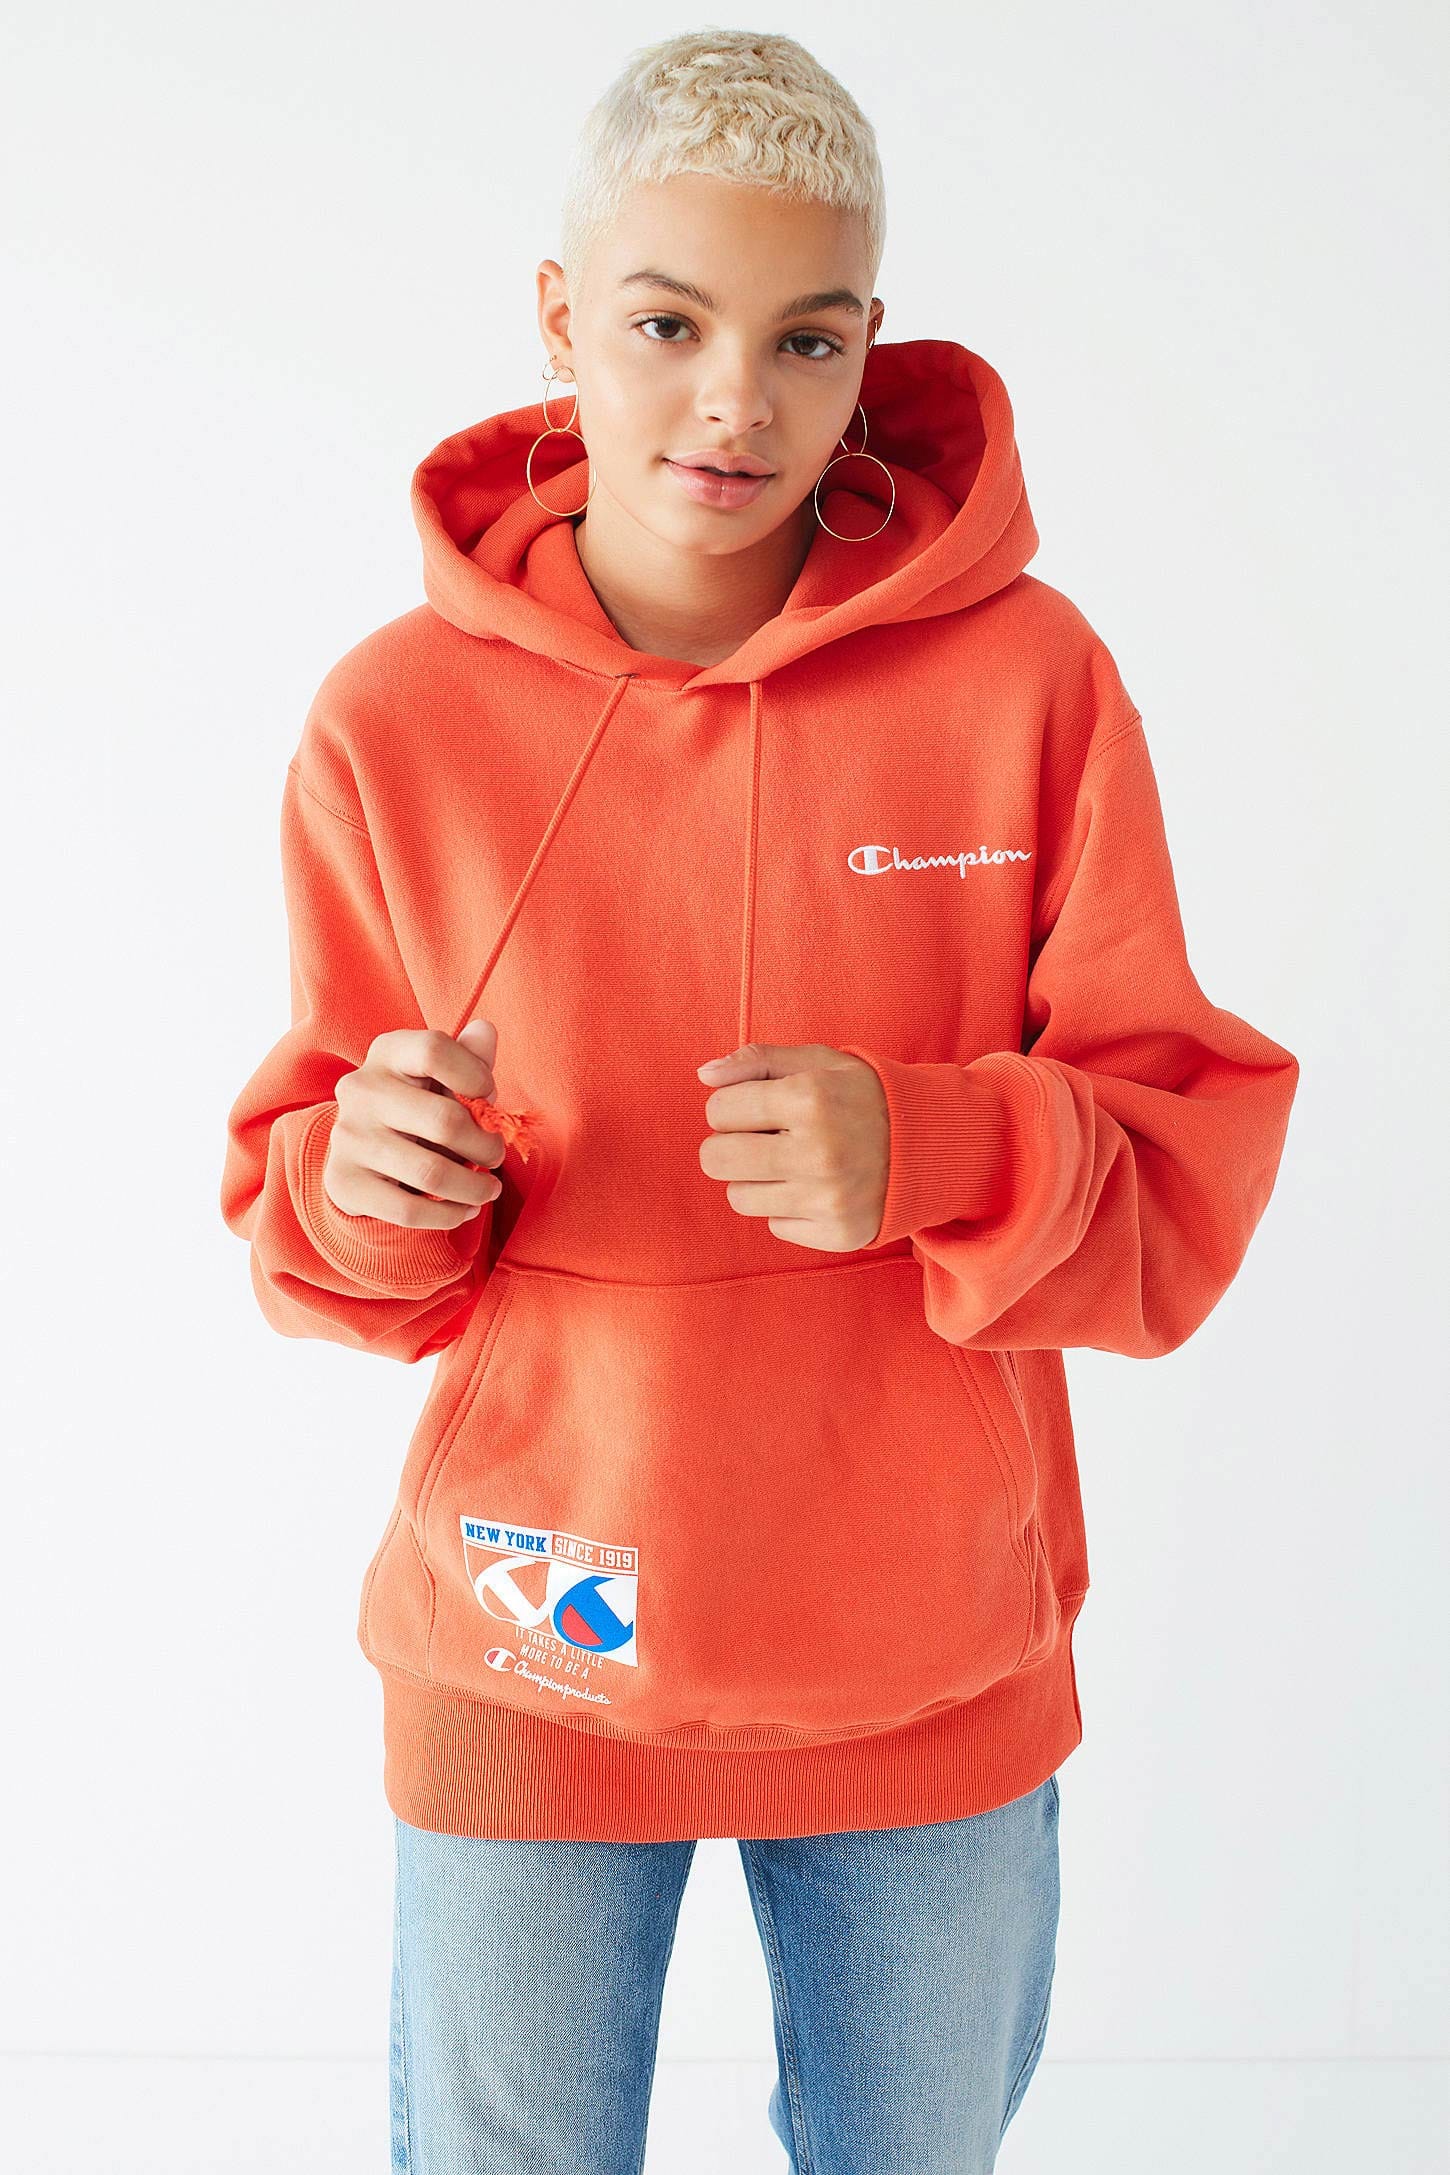 urban outfitters orange hoodie